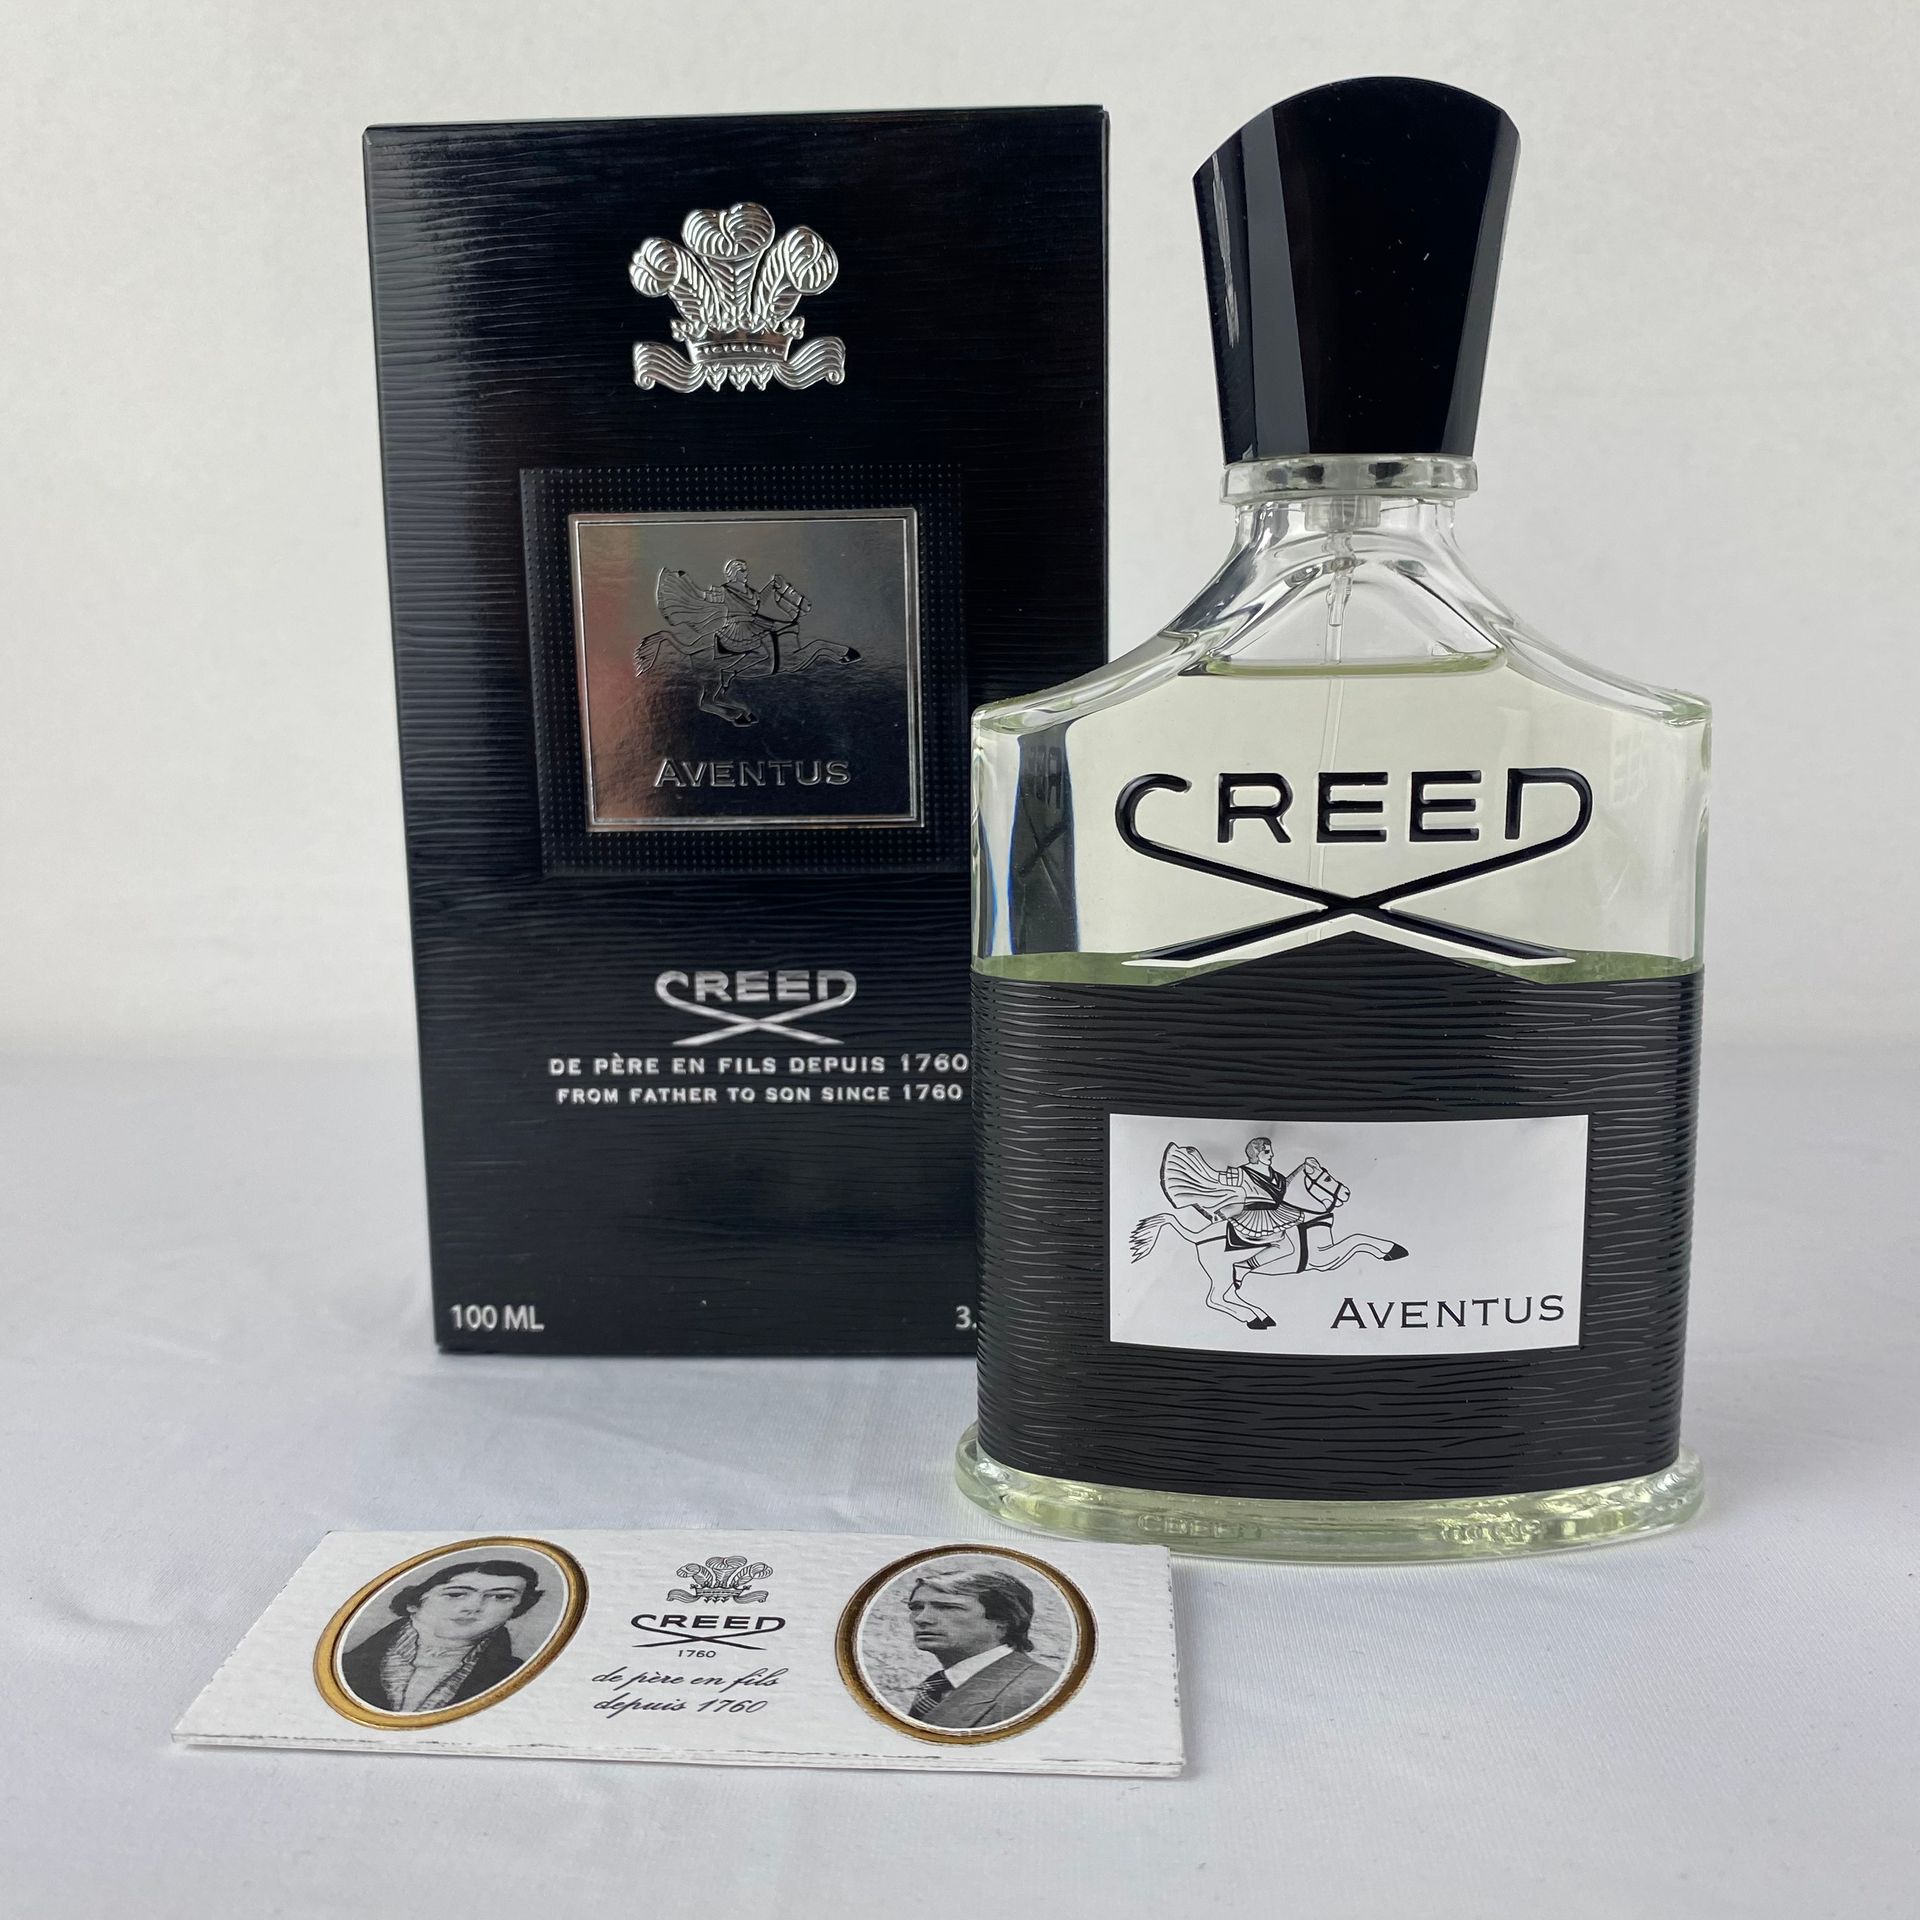 CREED AVENTUS Lot de 2 Eaux de parfum Creed Aventus 100ml.